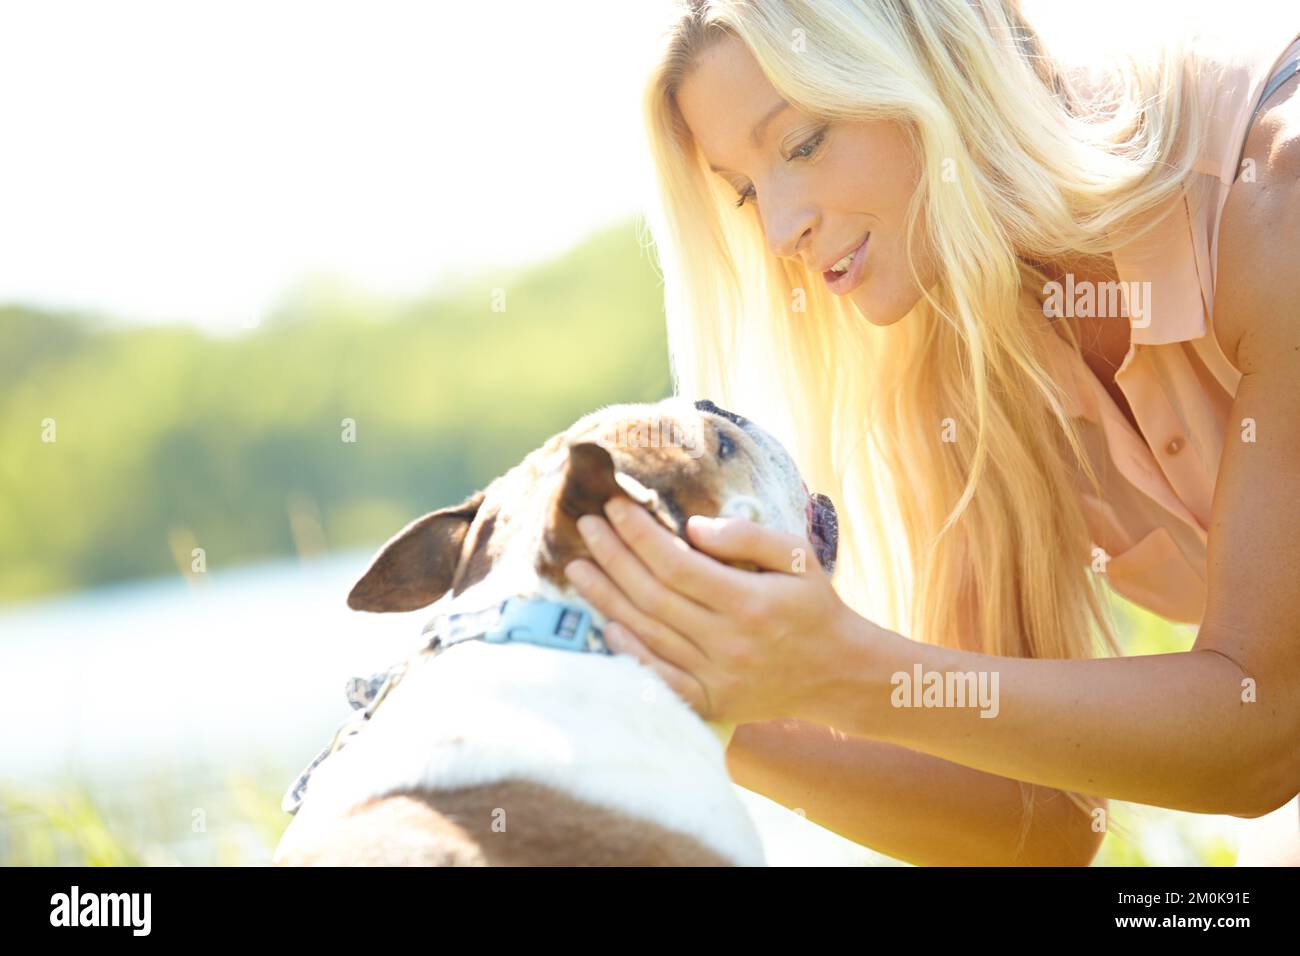 Einen Moment mit meinem besten Freund zu verbringen. Eine schöne Blondine, die mit ihrem Hund auf einer Wiese spricht. Stockfoto